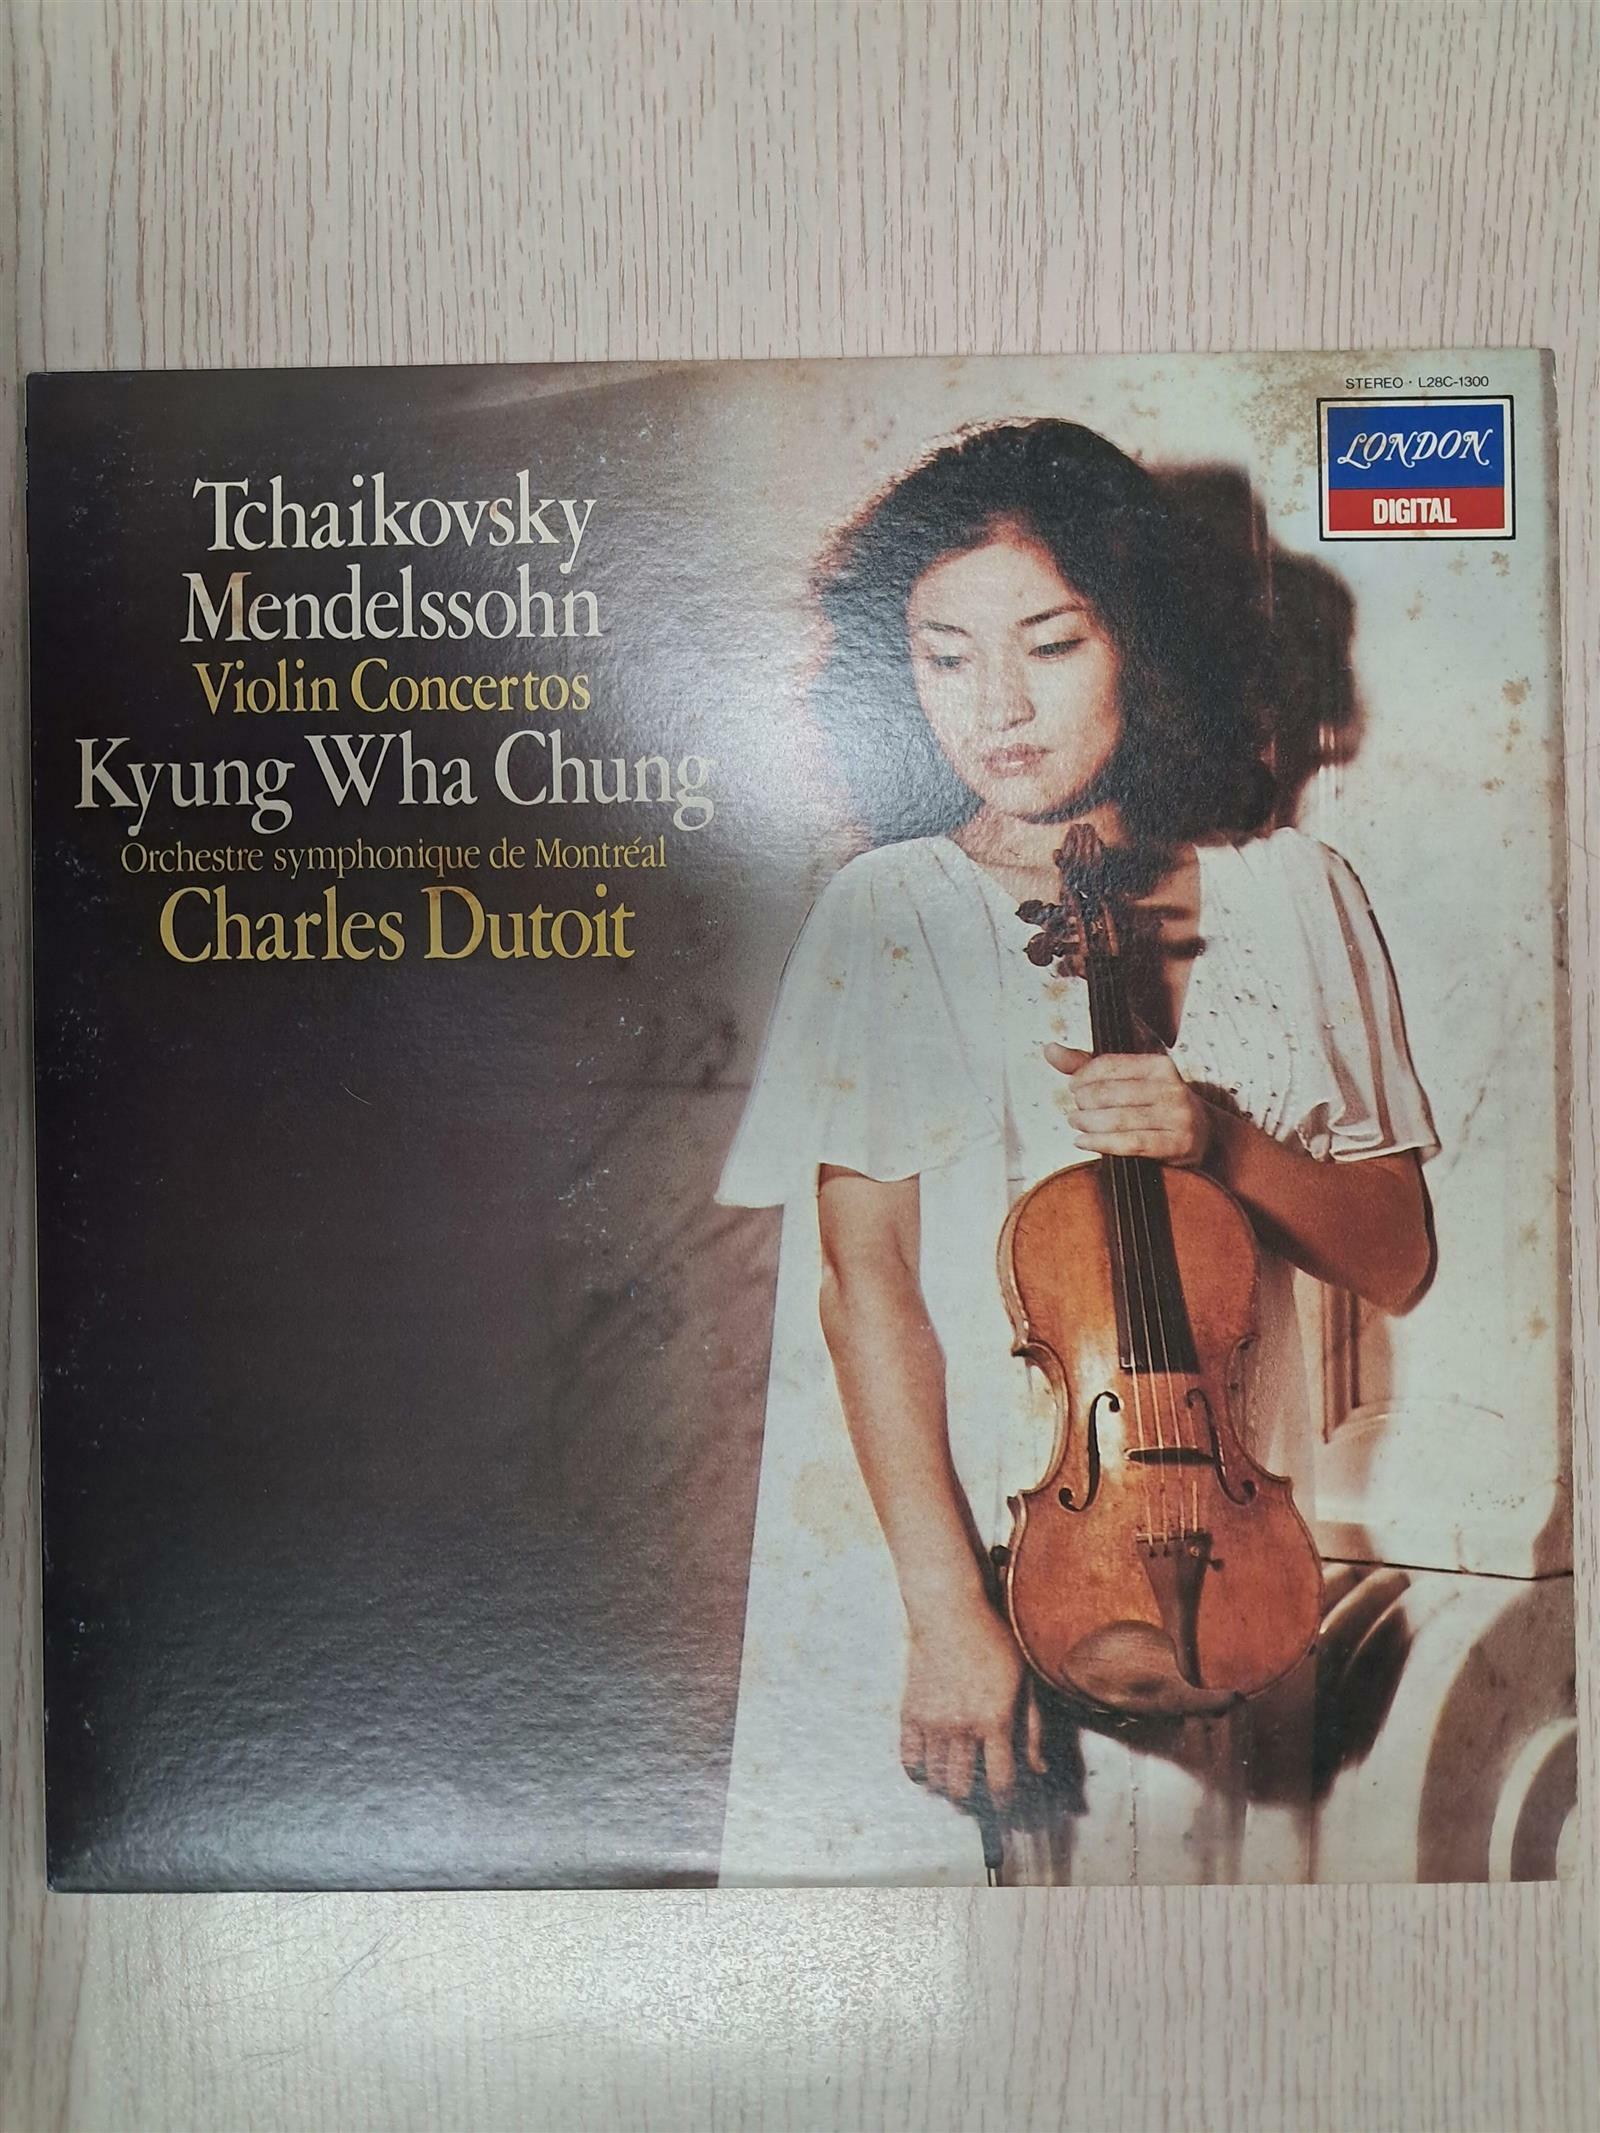 [중고] [수입][LP] 차이콥스키(Tchaikovsky), 멘델스존(Mendelssohn) 바이올린 협주곡